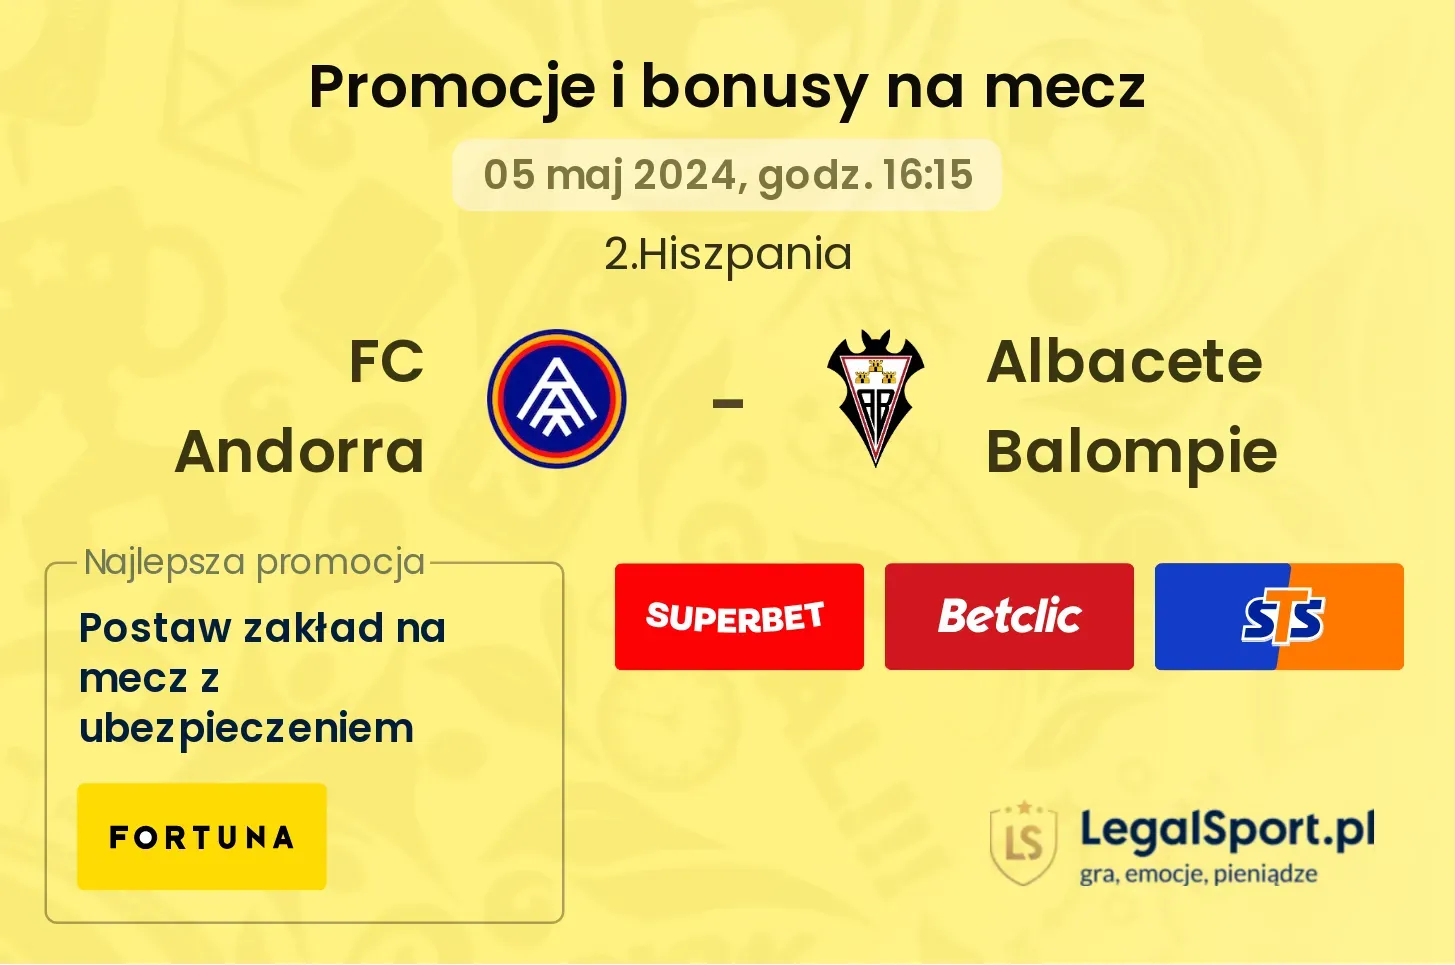 FC Andorra - Albacete Balompie promocje bonusy na mecz